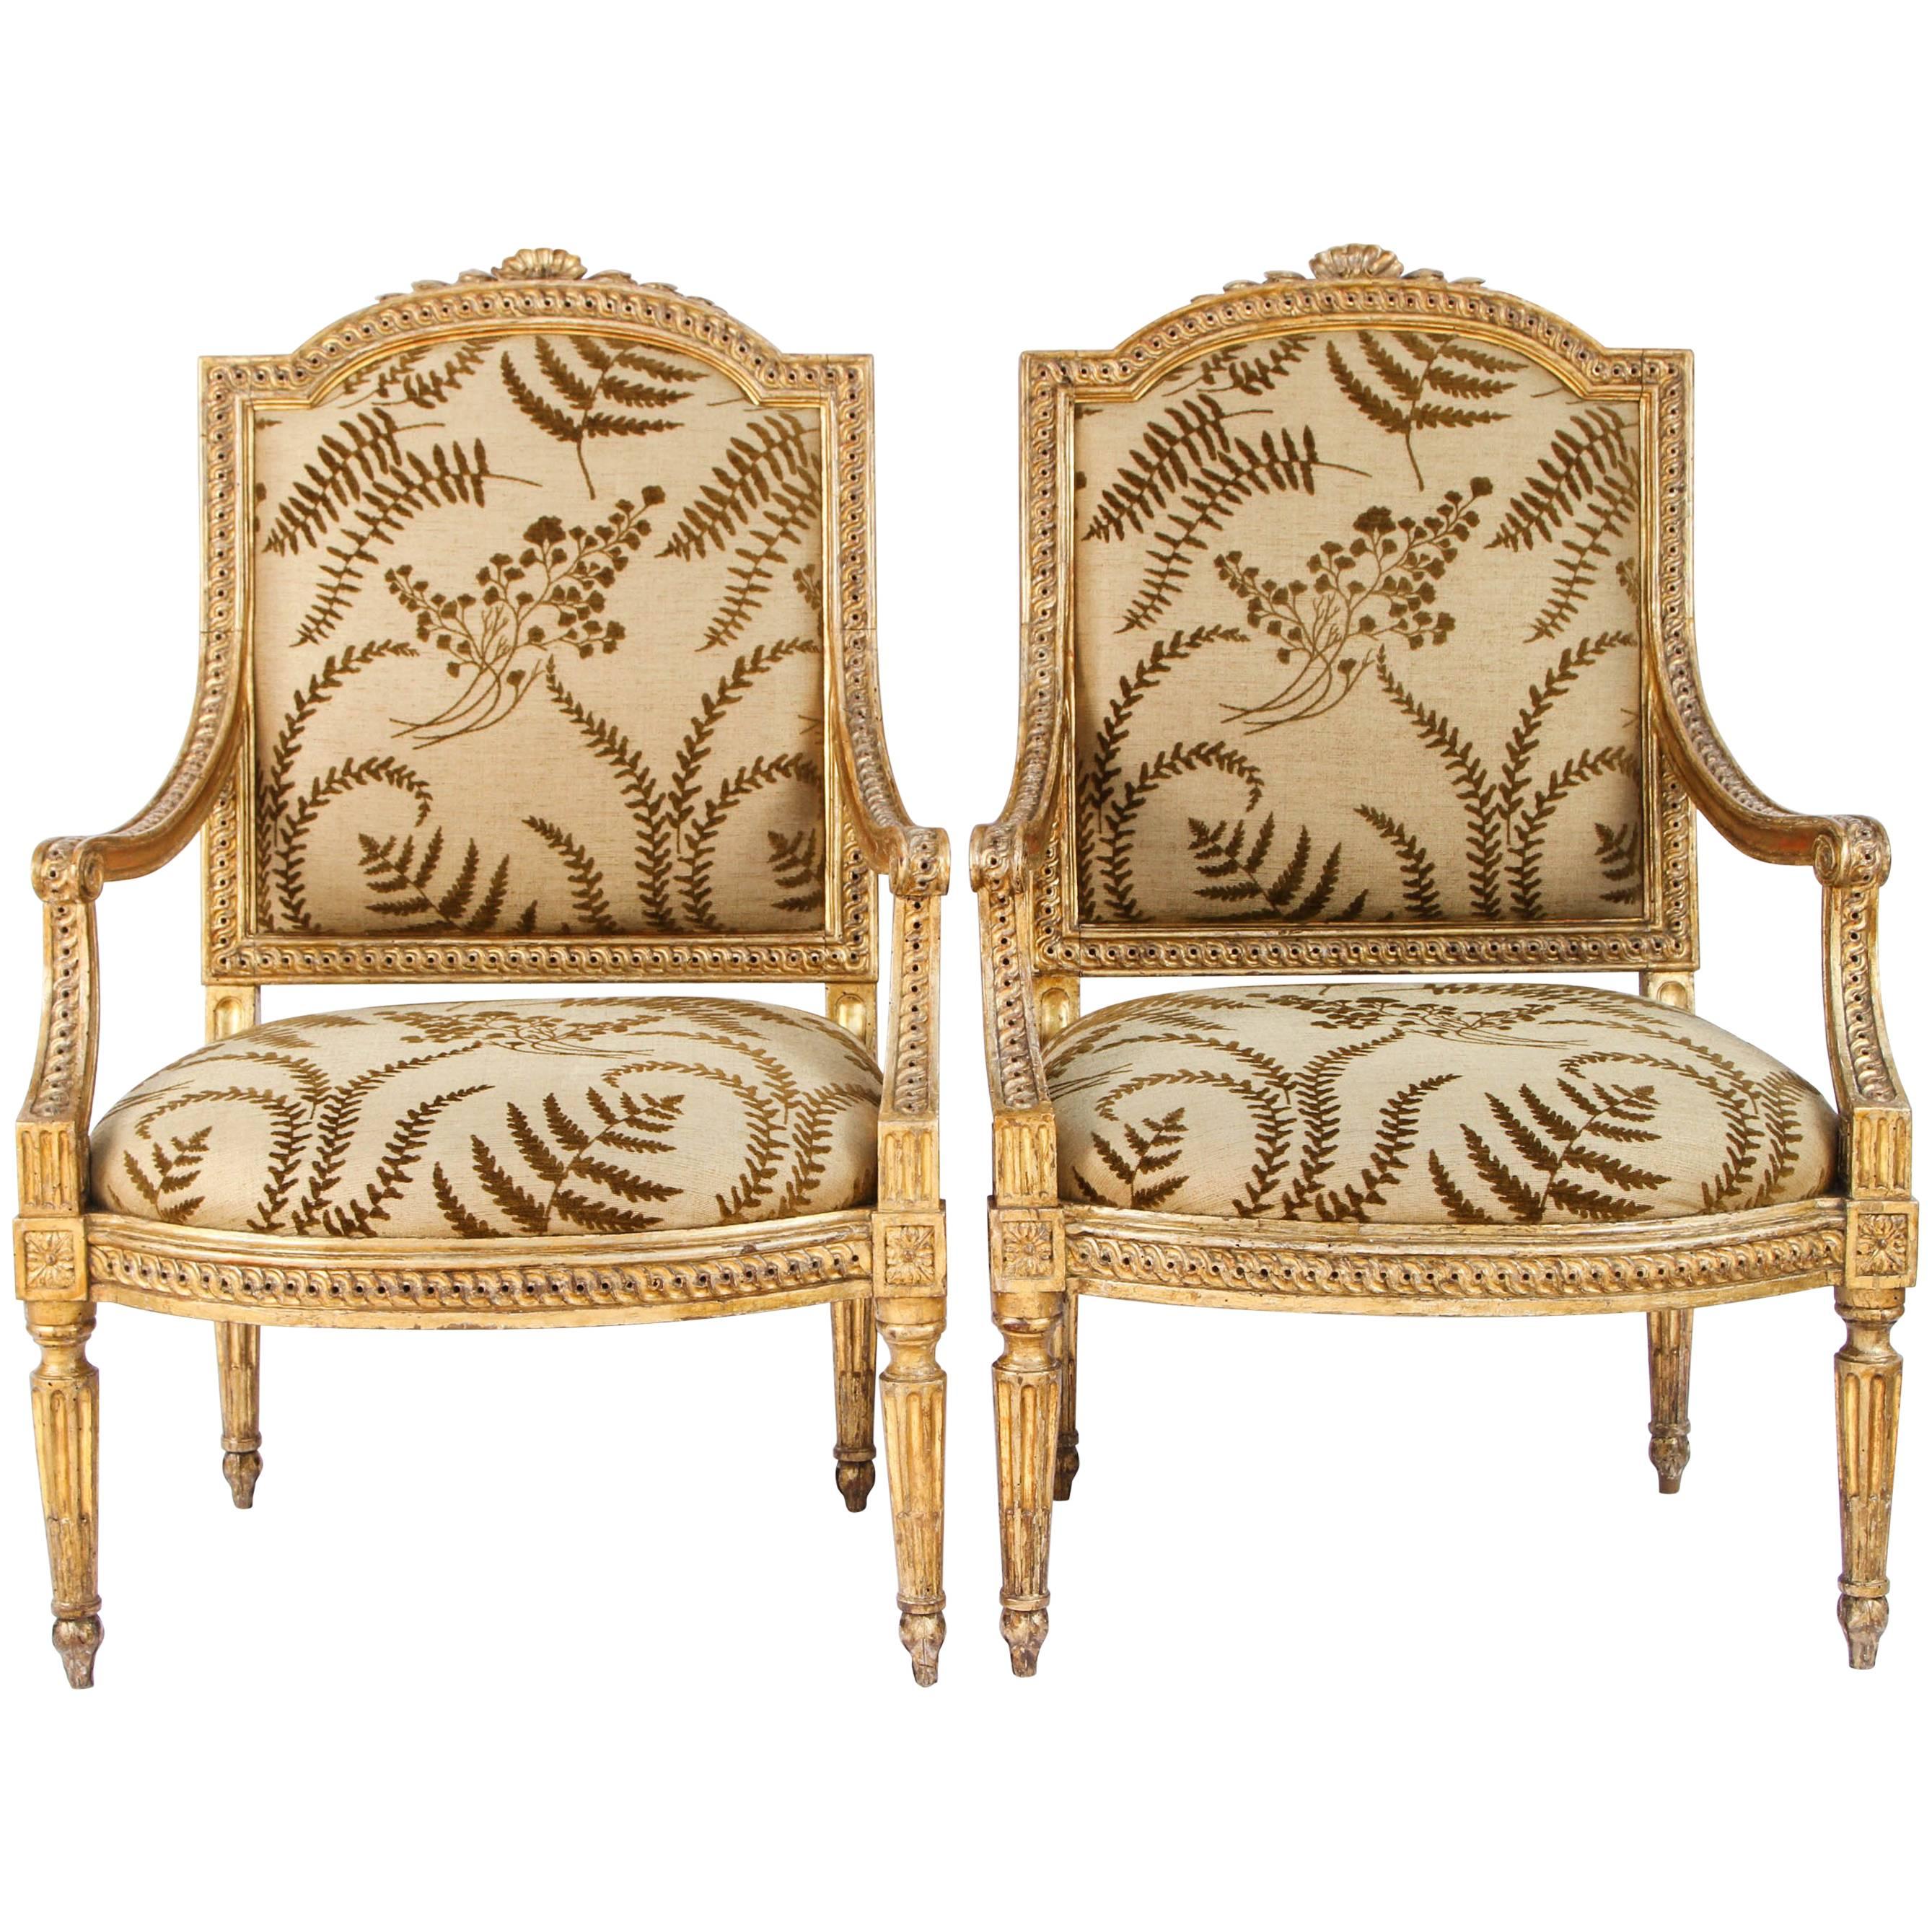 Paire de fauteuils italiens du 18ème siècle en bois doré sculpté et sculpté